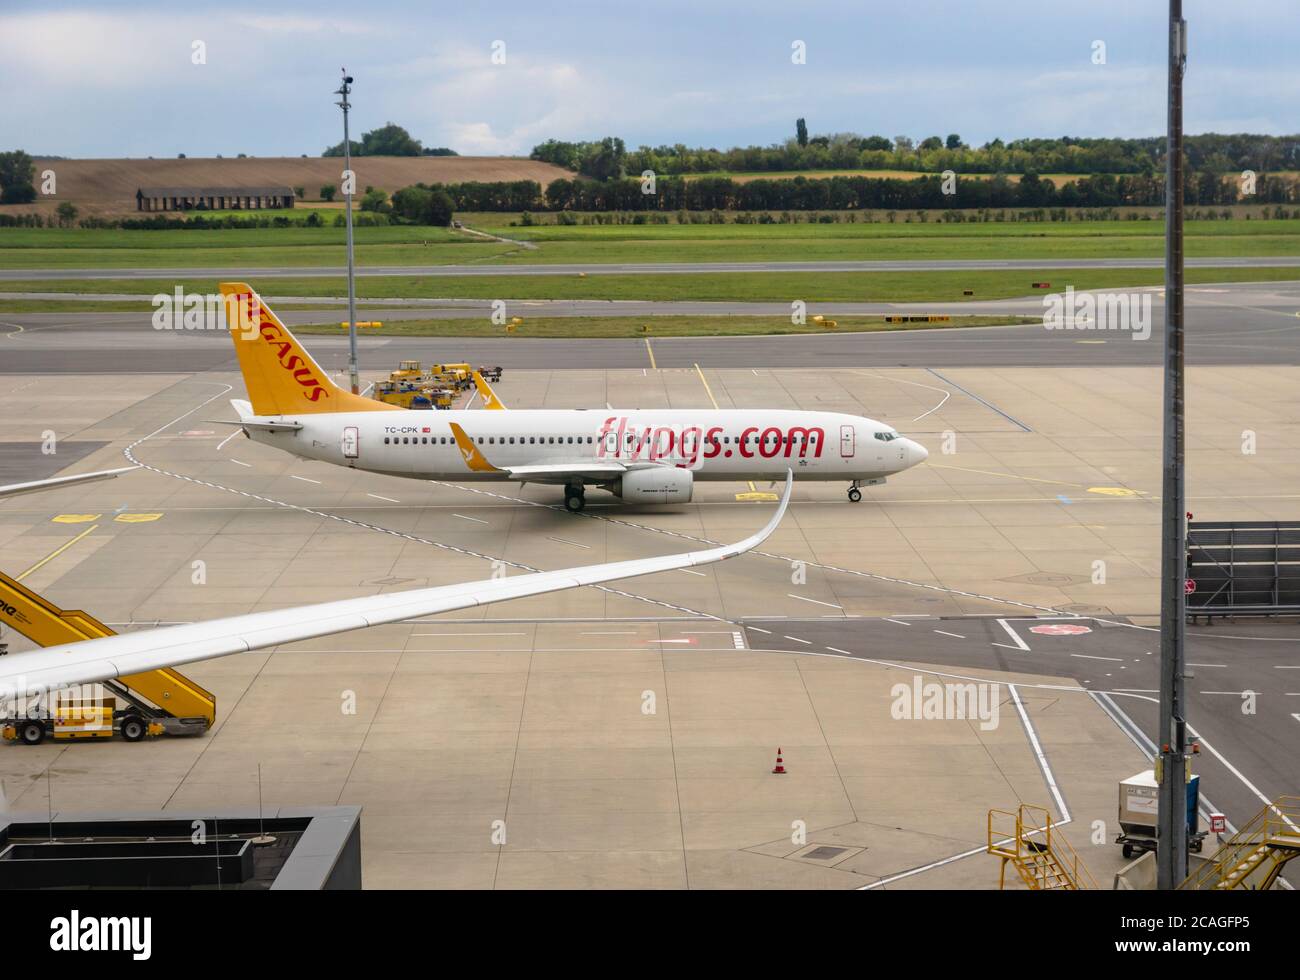 Wien, Österreich - Juli 2020: Pegasus Airlines Flugzeuge auf Start- und Landebahn des Flughafen Wien Schwechat. Pegasus Airlines ist eine türkische Low-Cost-Fluggesellschaft Stockfoto